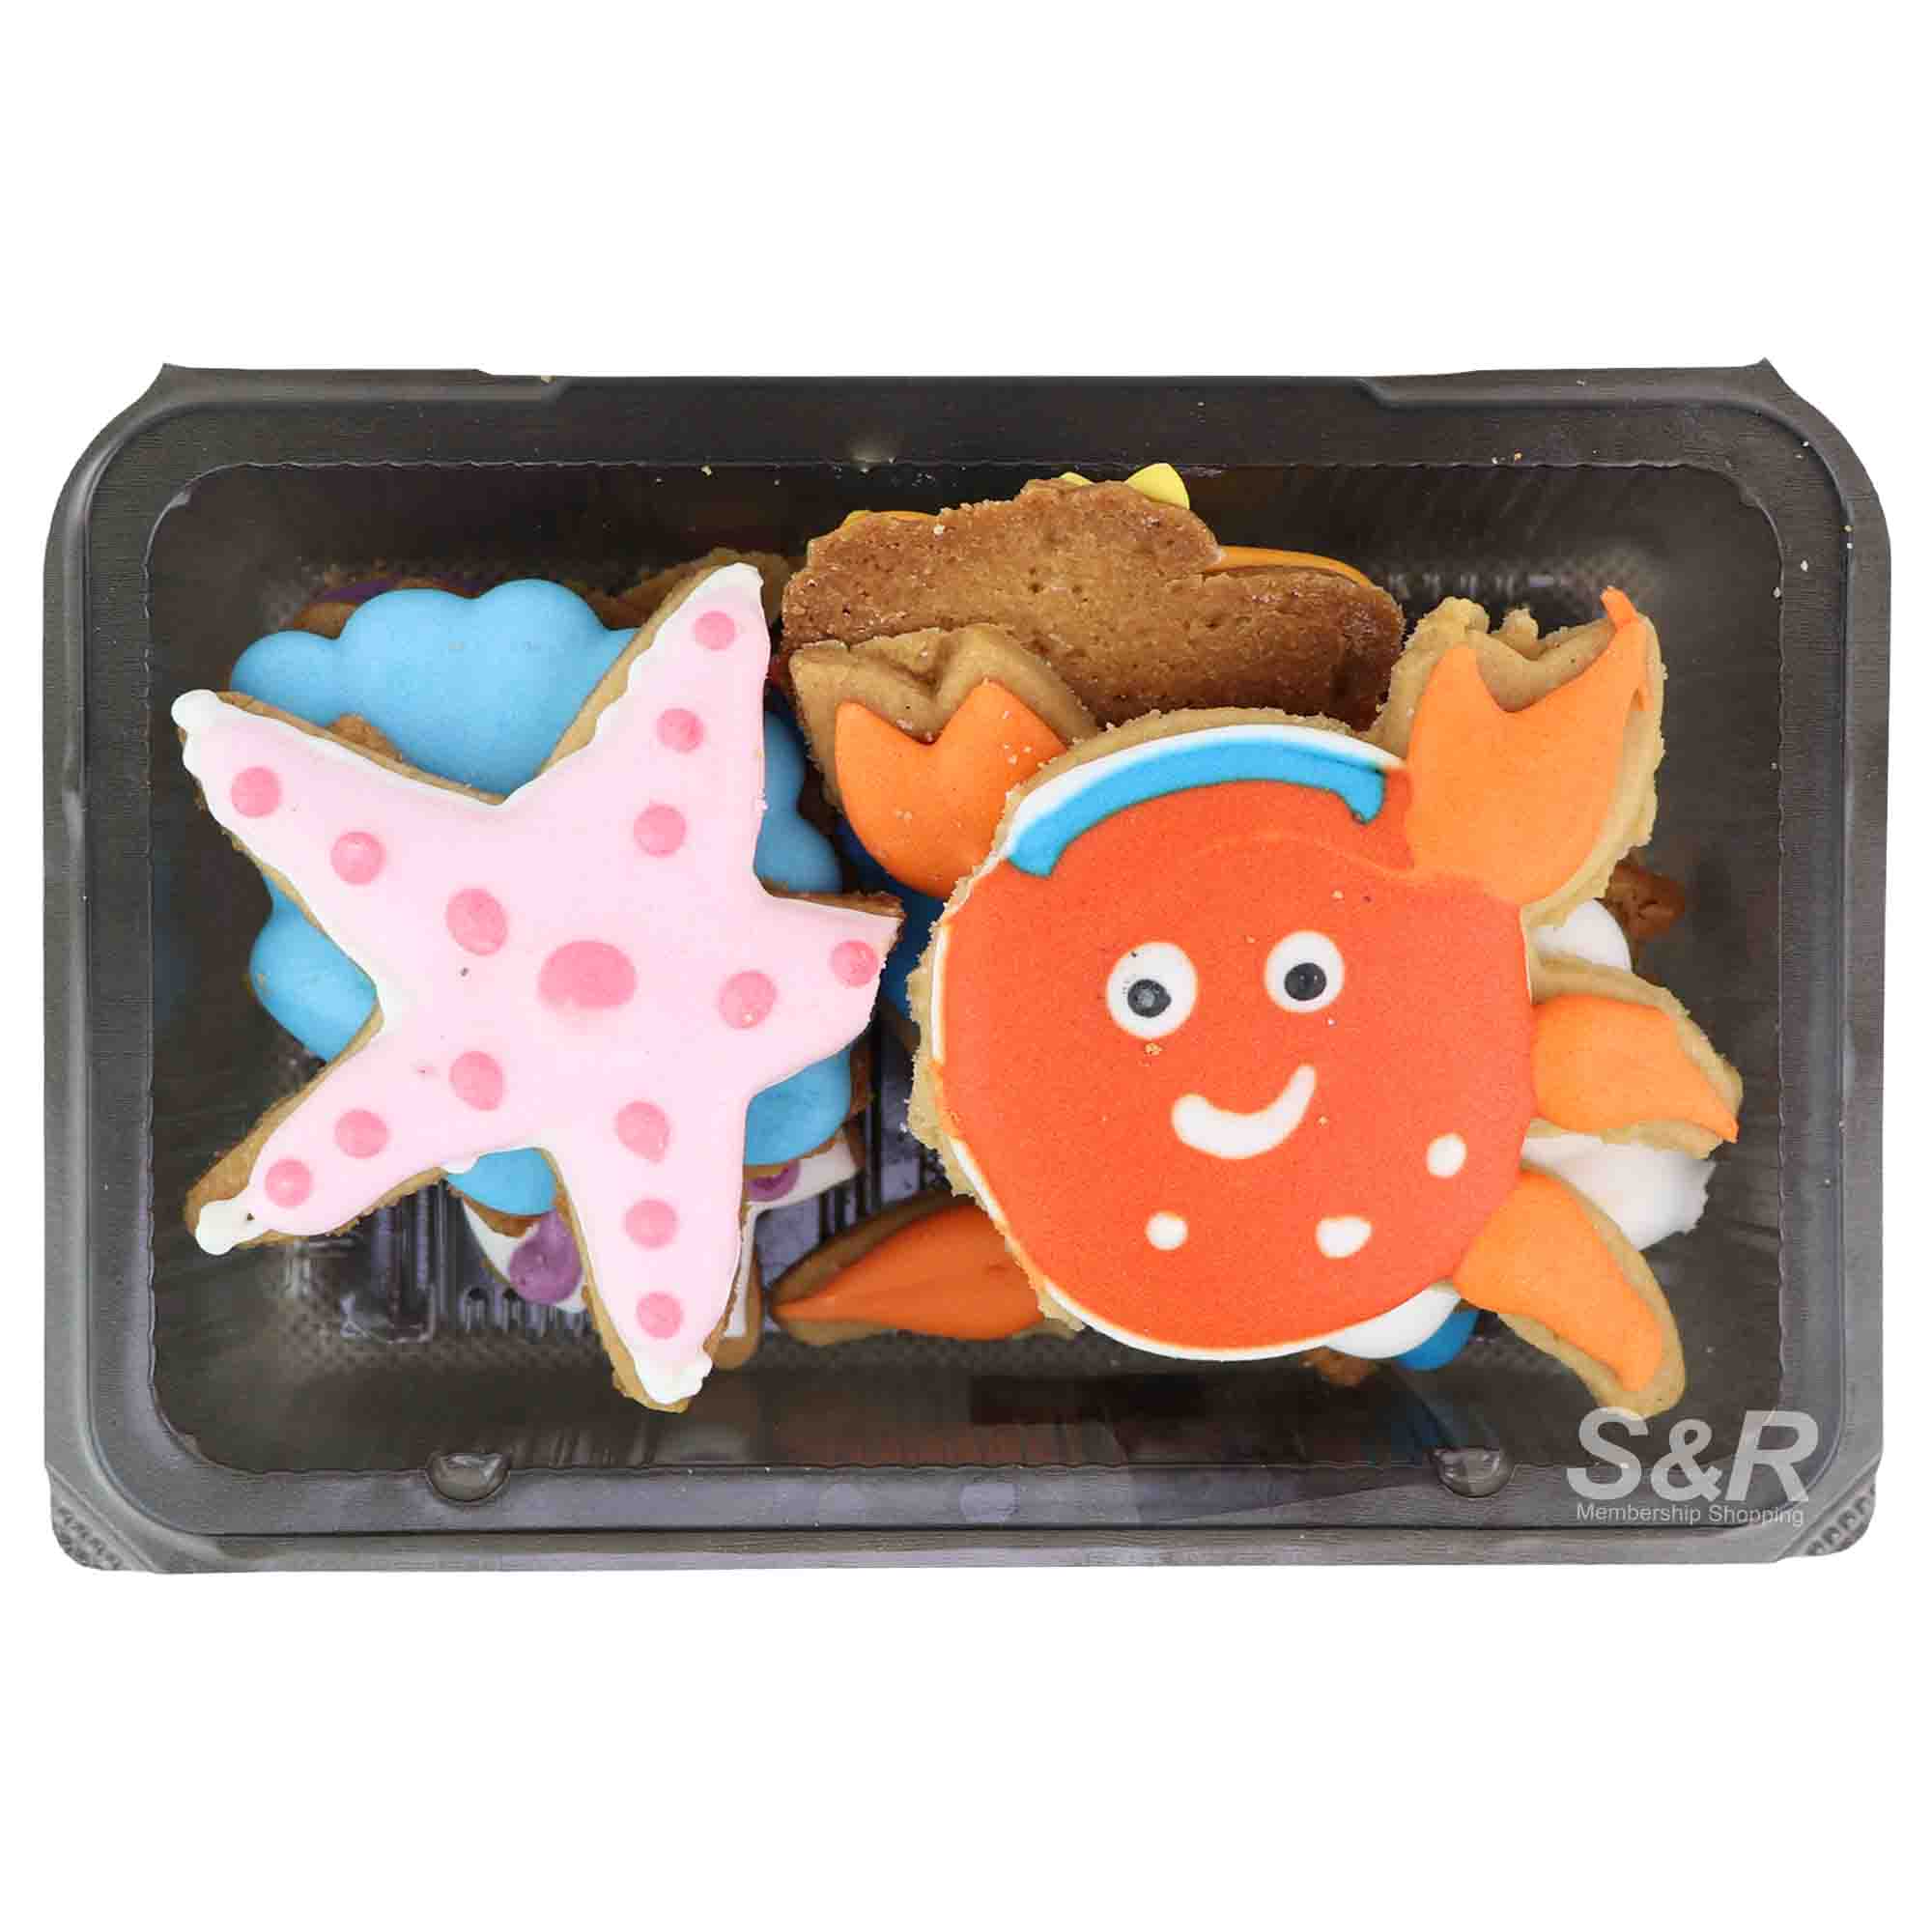 S&R Assorted Cookies